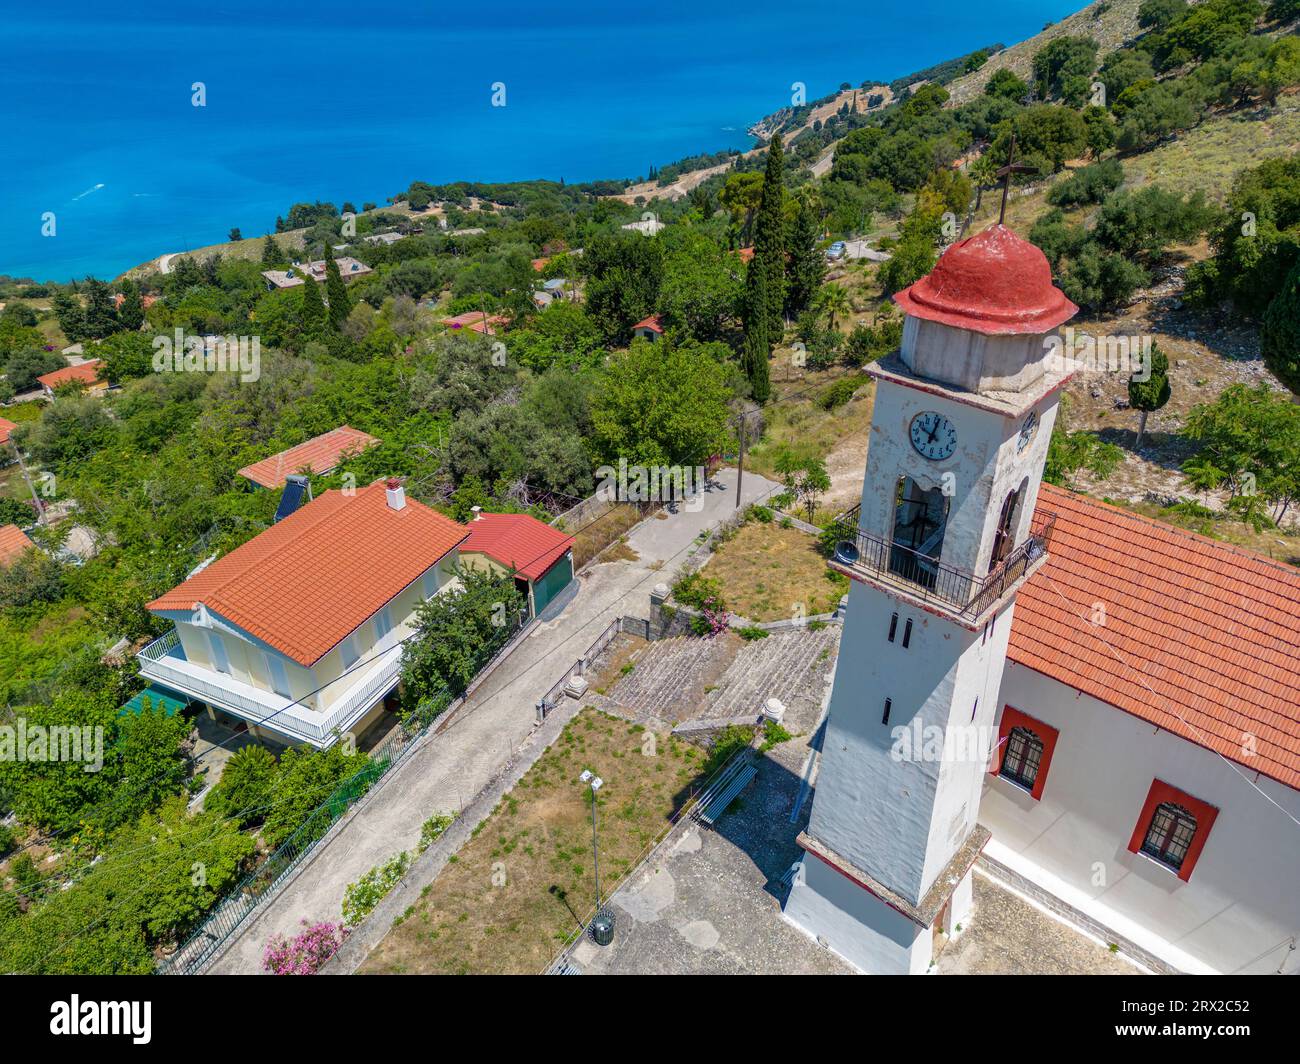 Vue aérienne de l'église orthodoxe grecque et du littoral près de Zola, Céphalonie, îles Ioniennes, îles grecques, Grèce, Europe Banque D'Images